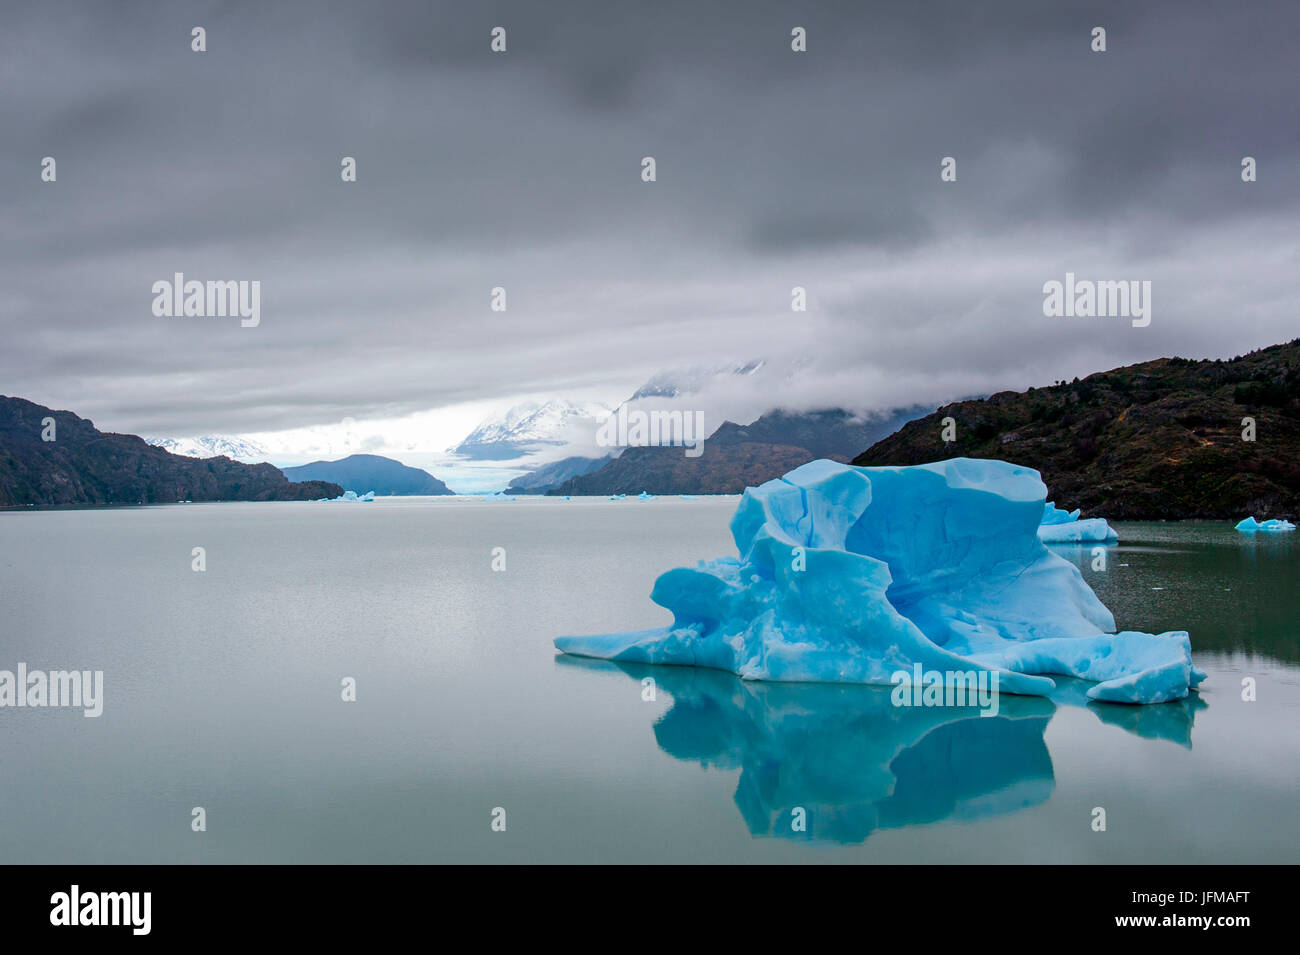 Grey Lake, Parc National Torres del Paine, Patagonie, Chili, Amérique du Sud, iceberg flottant dans l'eau du lac, gris Banque D'Images